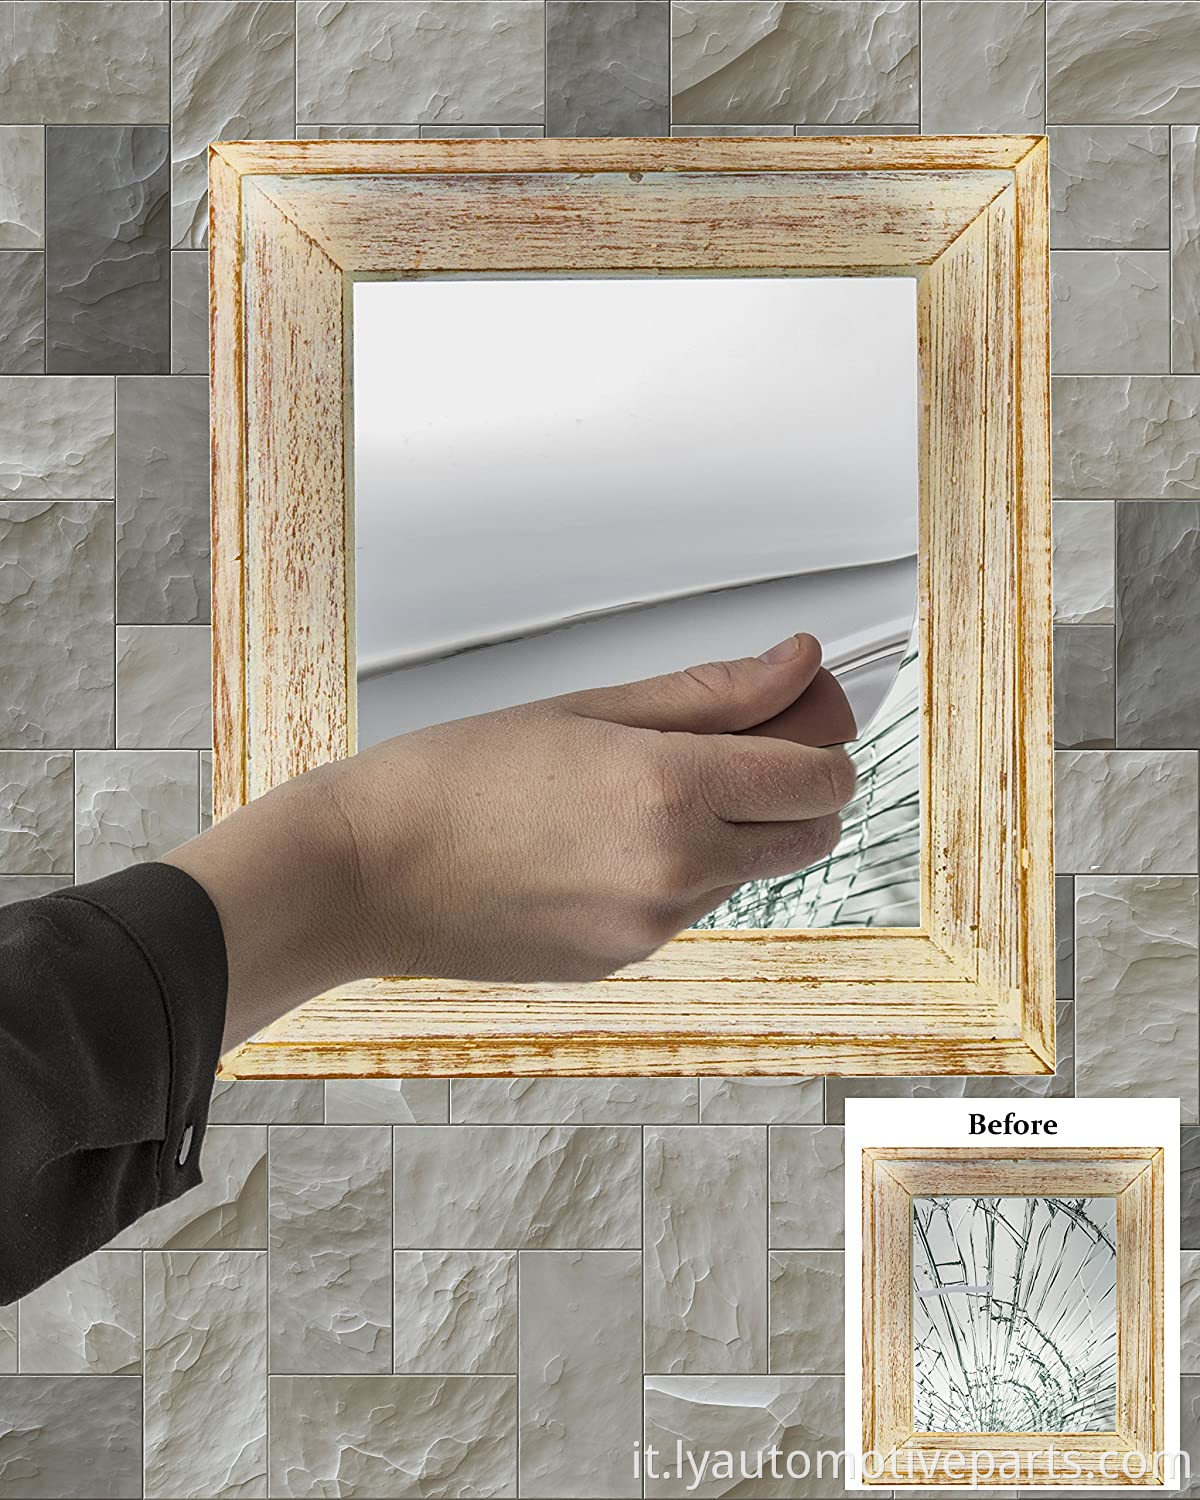 Sheet a specchio flessibile decorativo auto adesive piastrelle di specchio in plastica non vetro per lo specchio di retrovisore per auto (10*7 pollici)